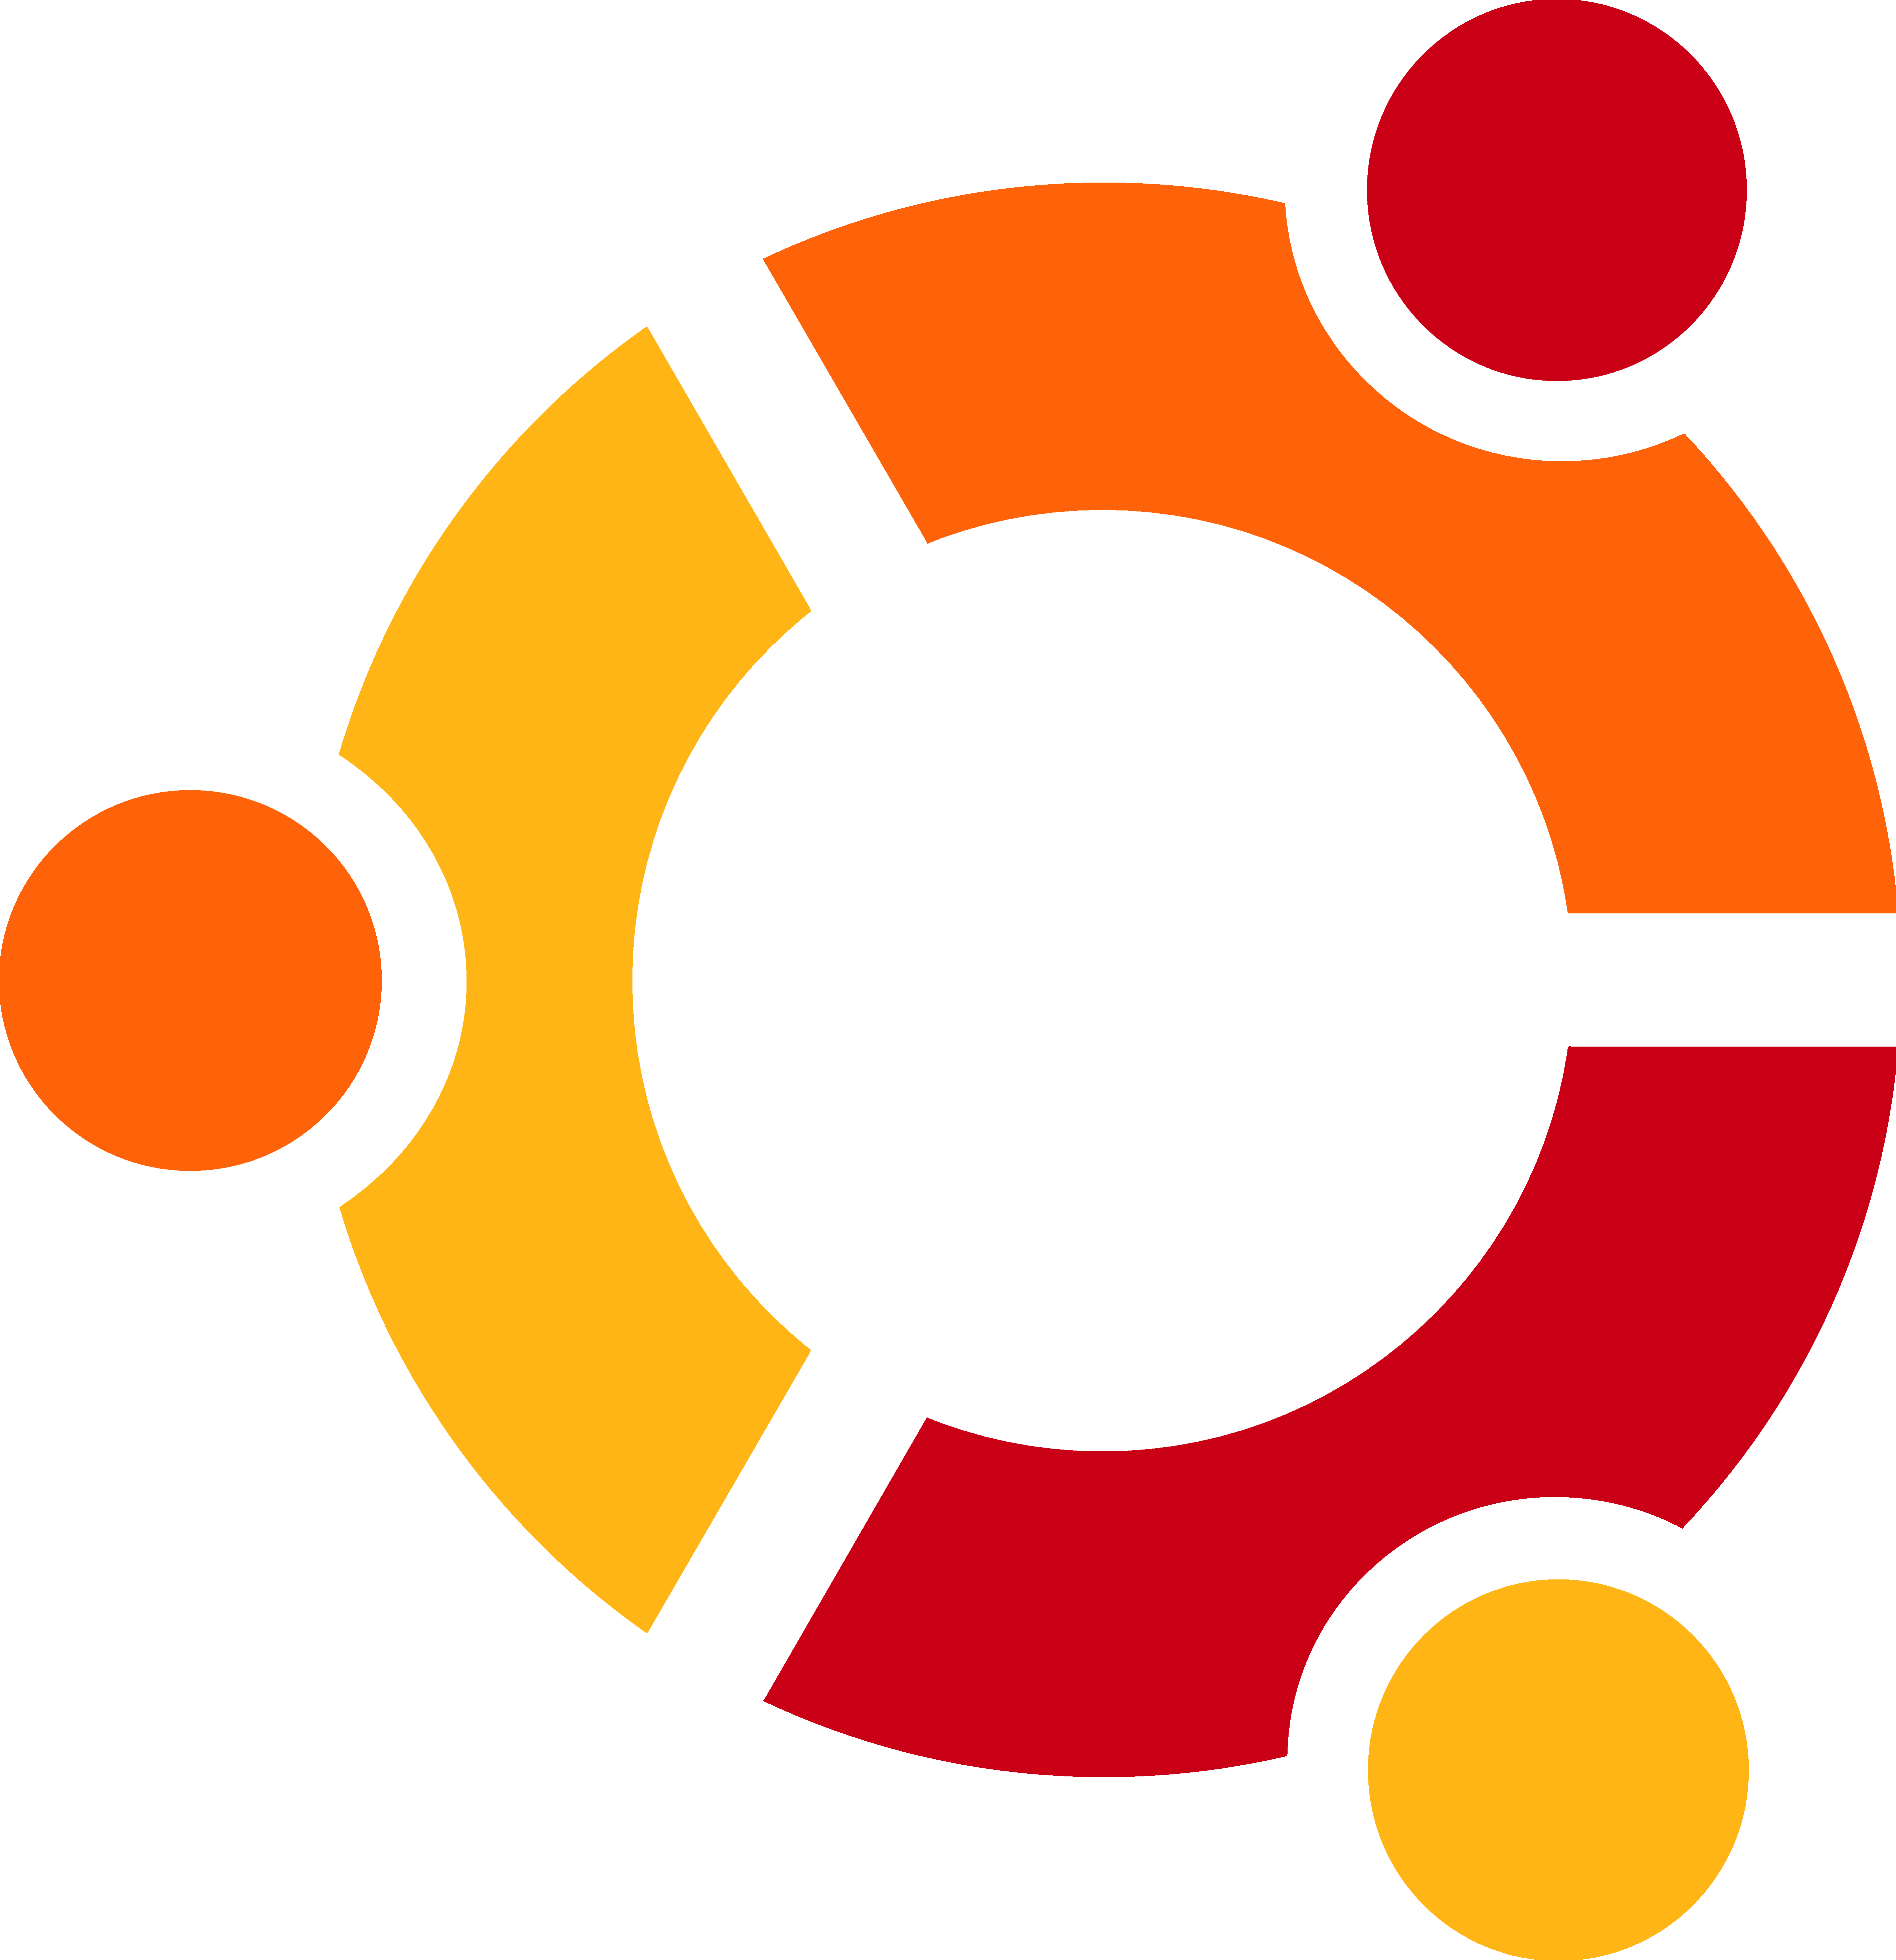 (with speedvideo) Ubuntu logo vector(2)